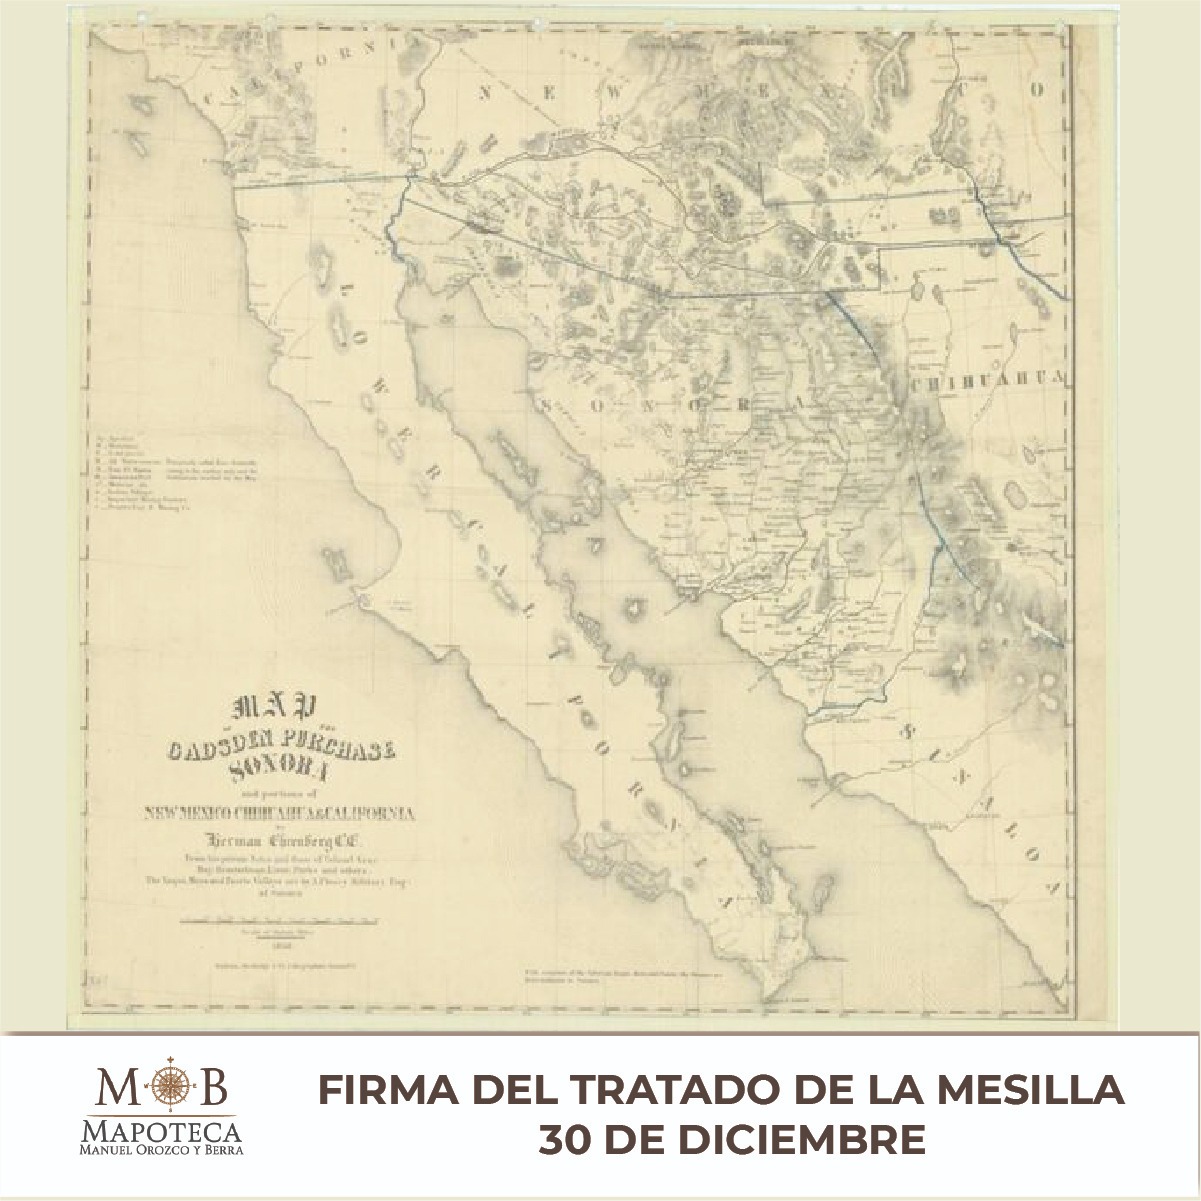 Para conmemorar un año más de la firma del Tratado de La Mesilla, la Mapoteca Manuel Orozco y Berra presenta esta imagen titulada: “Mapa del Tradado de La Mesilla, Sonora”. 

